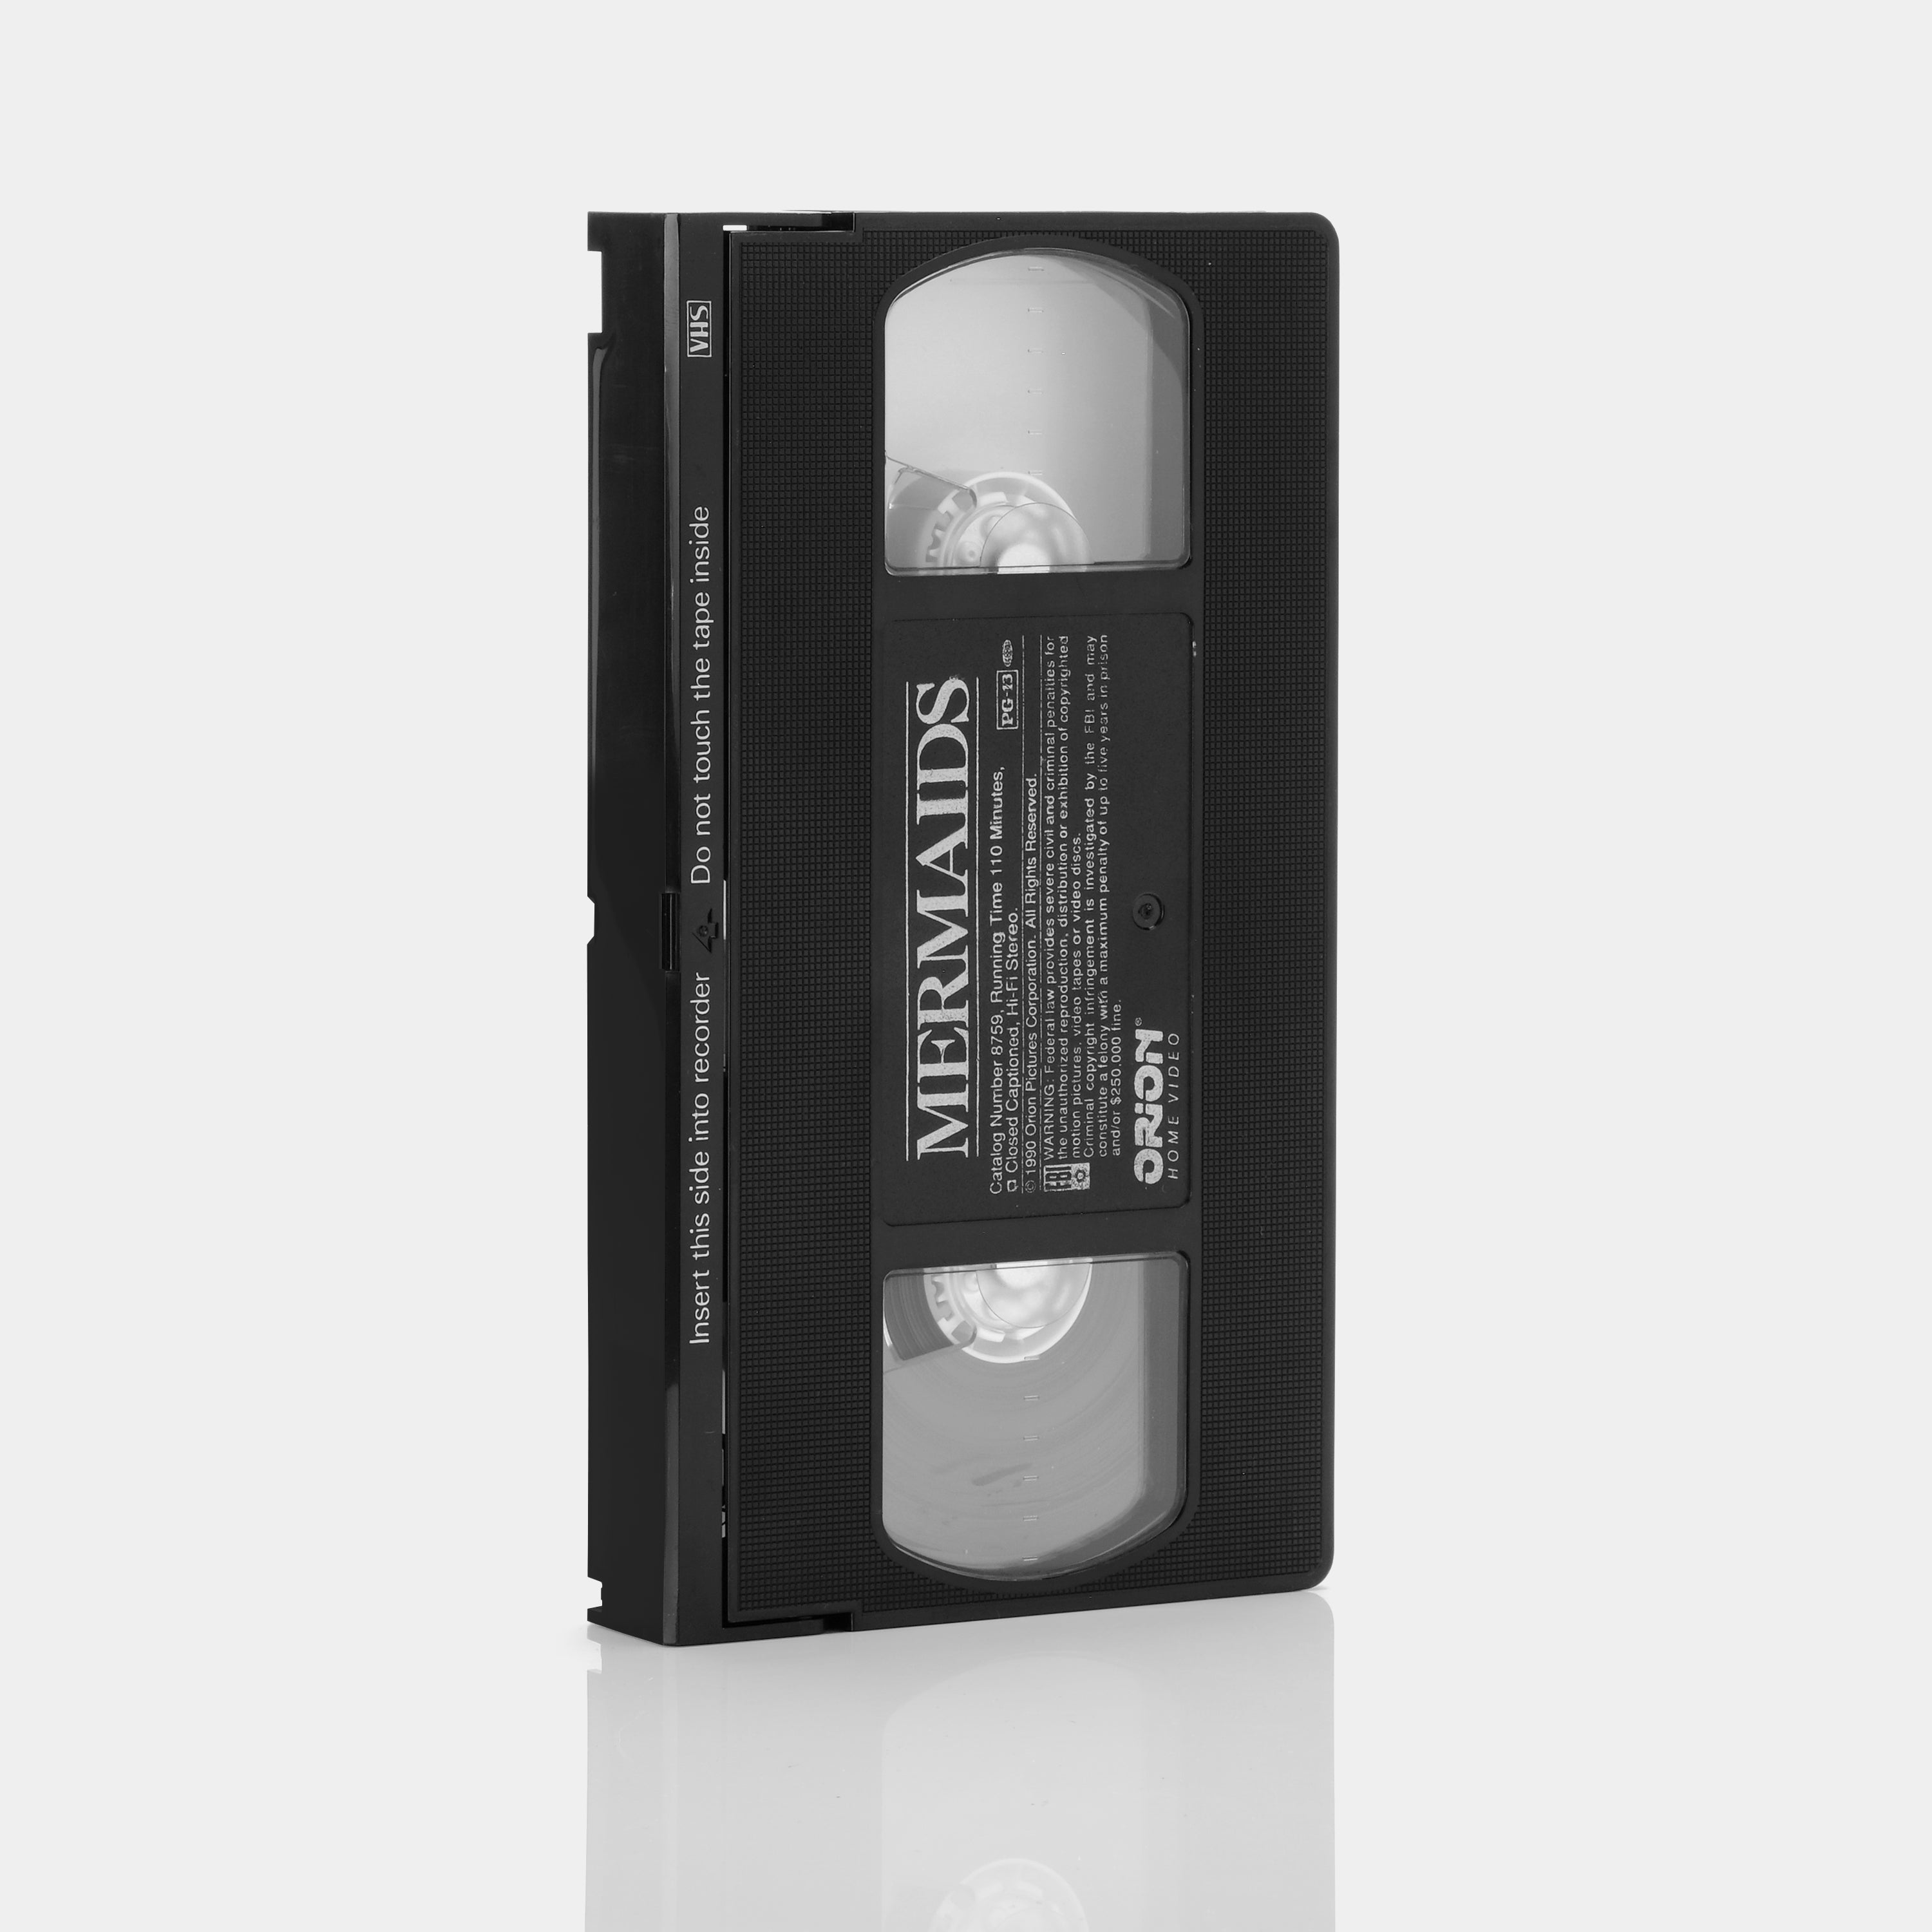 Mermaids VHS Tape